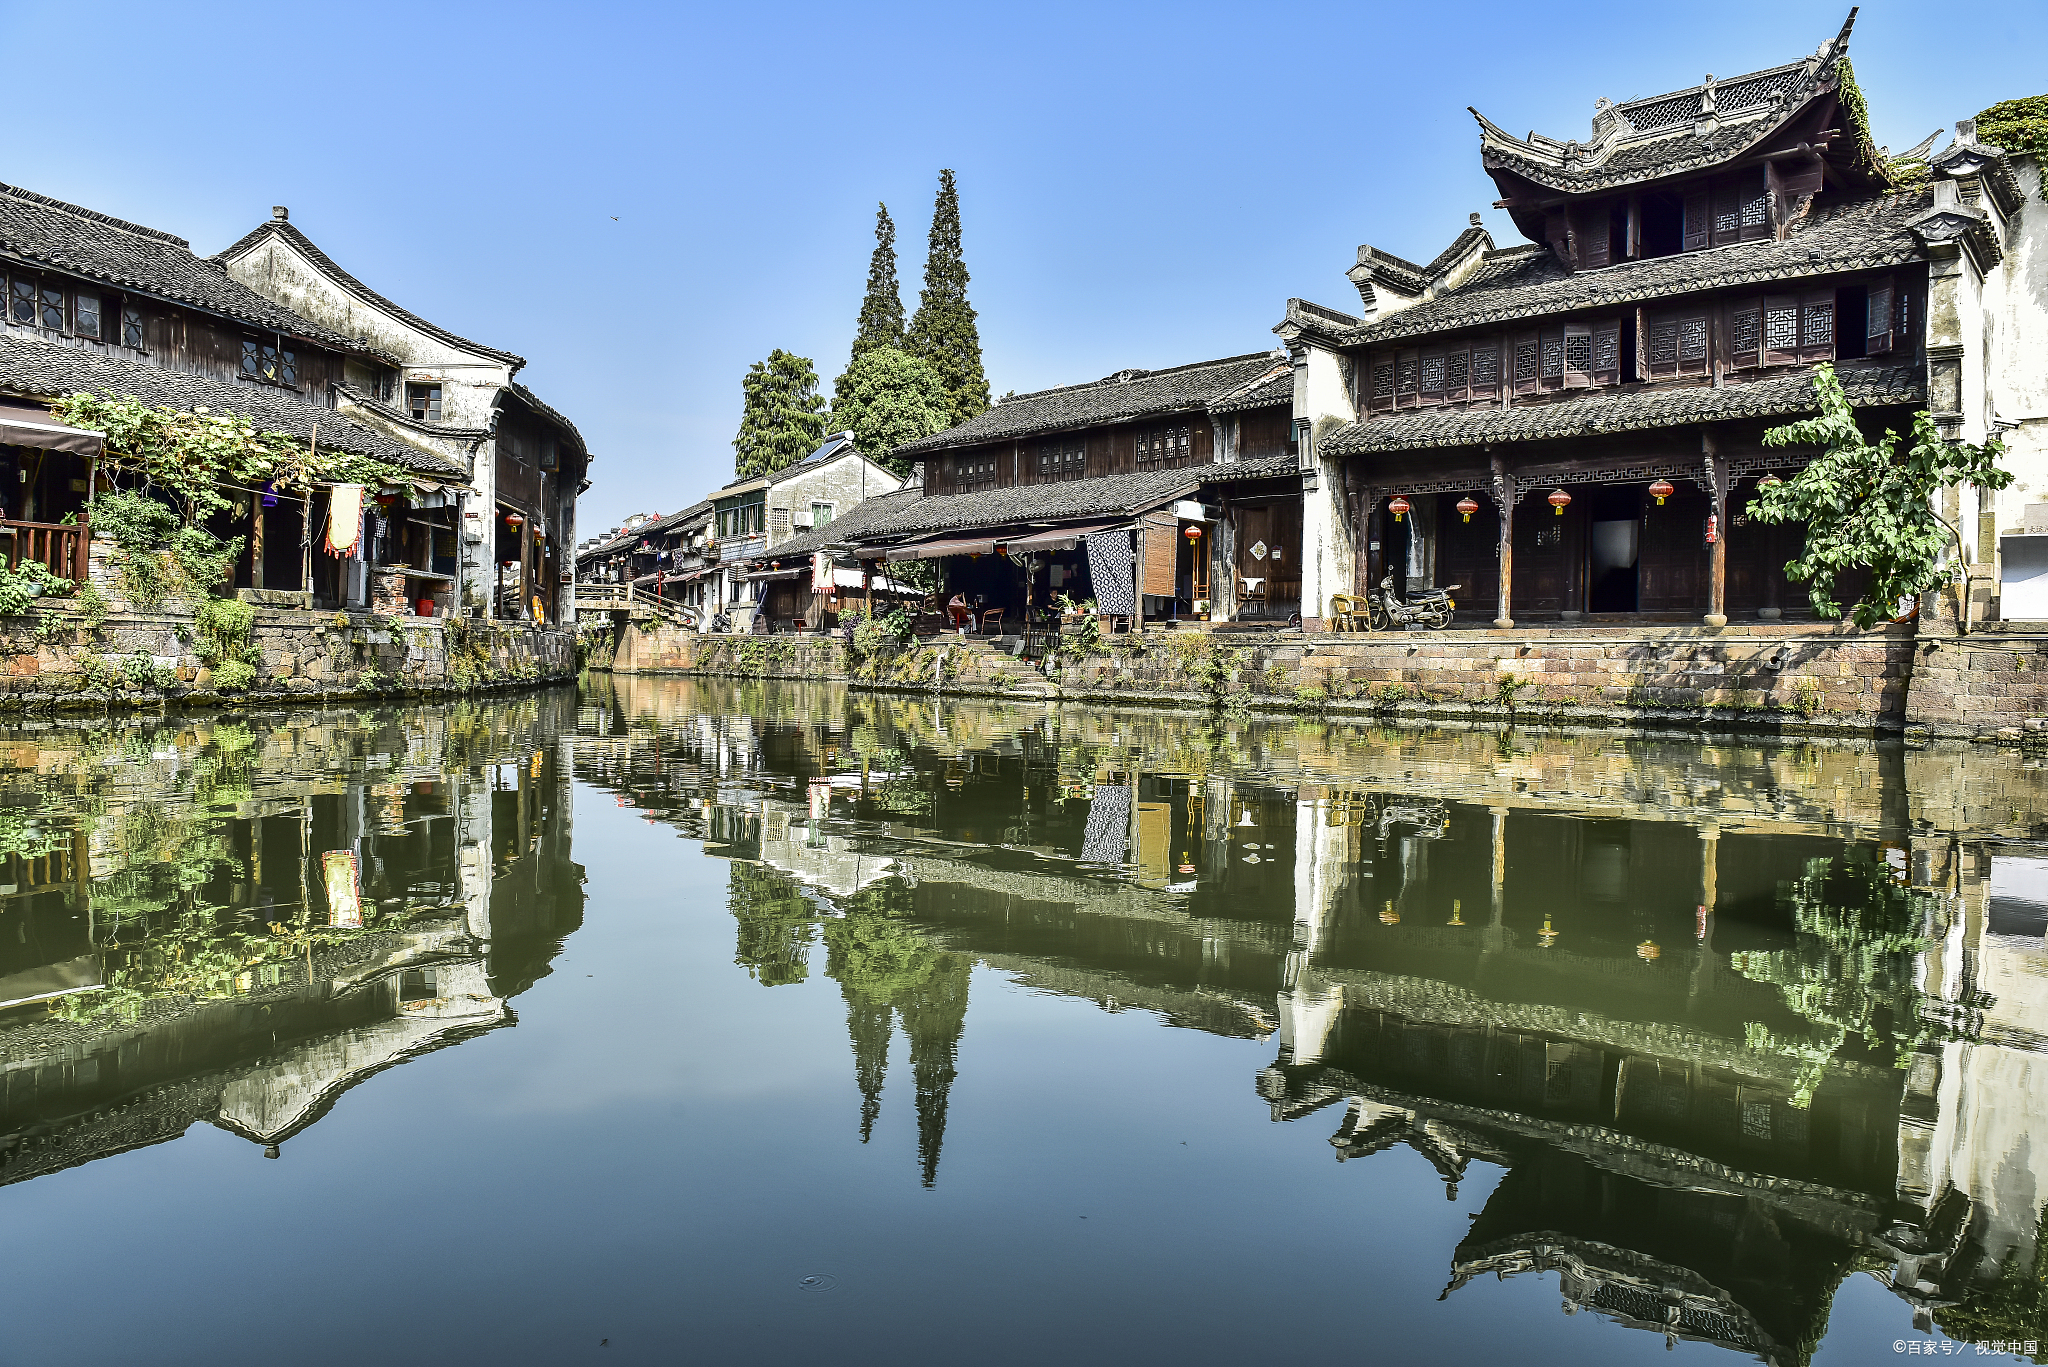 西兴古镇,坐落在钱塘江南岸,拥有悠久的历史渊源